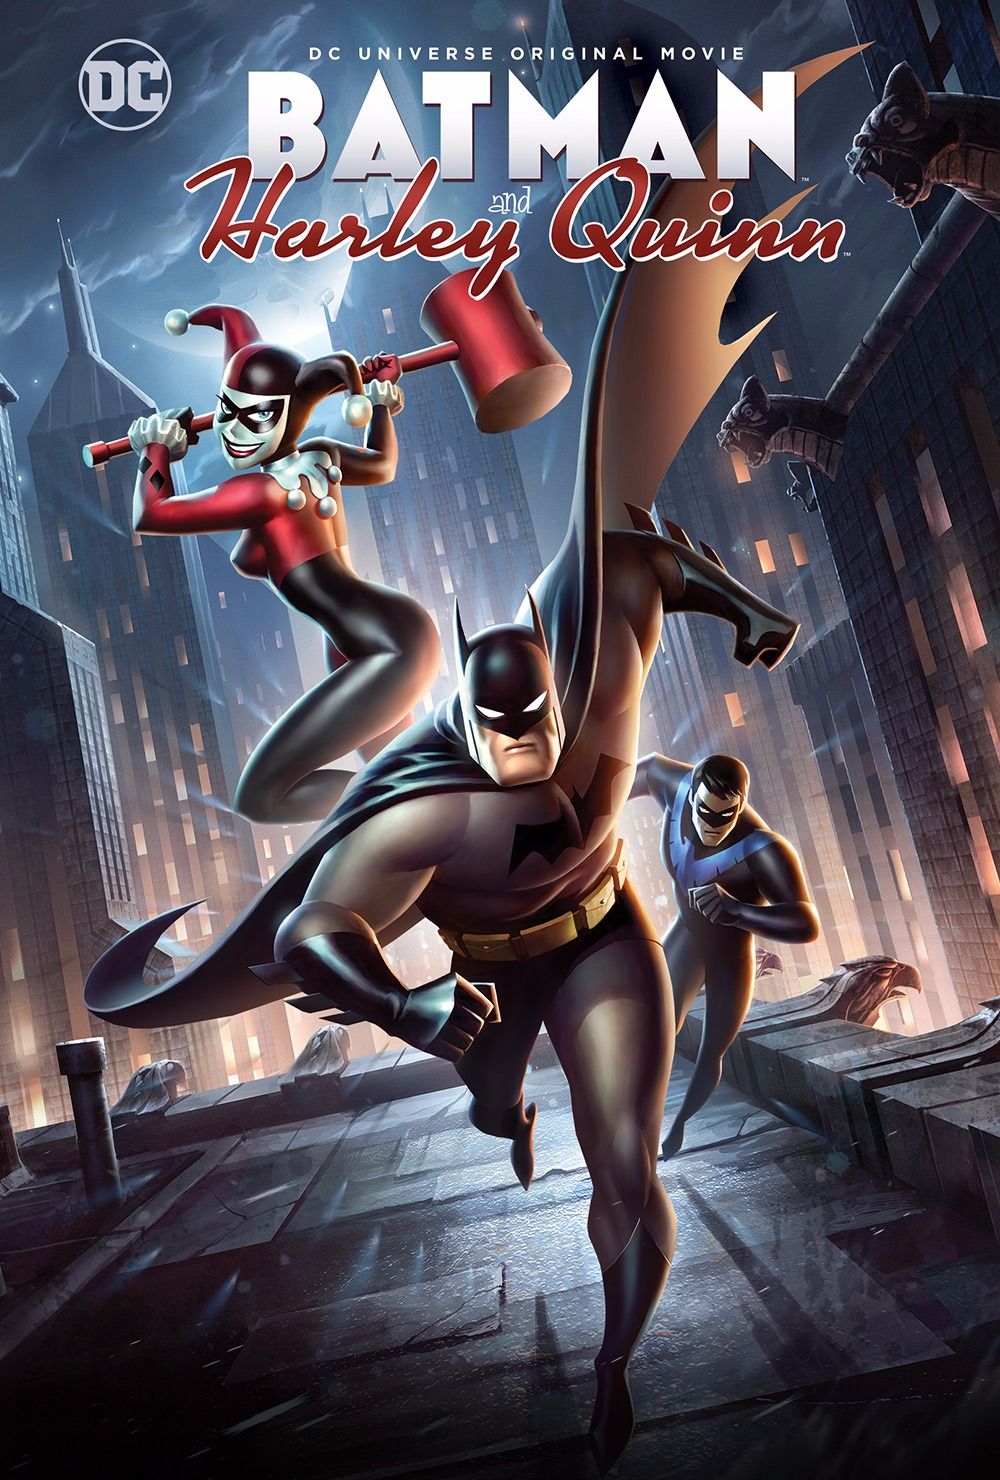 ดูหนังออนไลน์ฟรี Batman and Harley Quinn (2017) แบทแมน ปะทะ วายร้ายสาว ฮาร์ลี่ ควินน์ หนังมาสเตอร์ หนังเต็มเรื่อง ดูหนังฟรีออนไลน์ ดูหนังออนไลน์ หนังออนไลน์ ดูหนังใหม่ หนังพากย์ไทย หนังซับไทย ดูฟรีHD